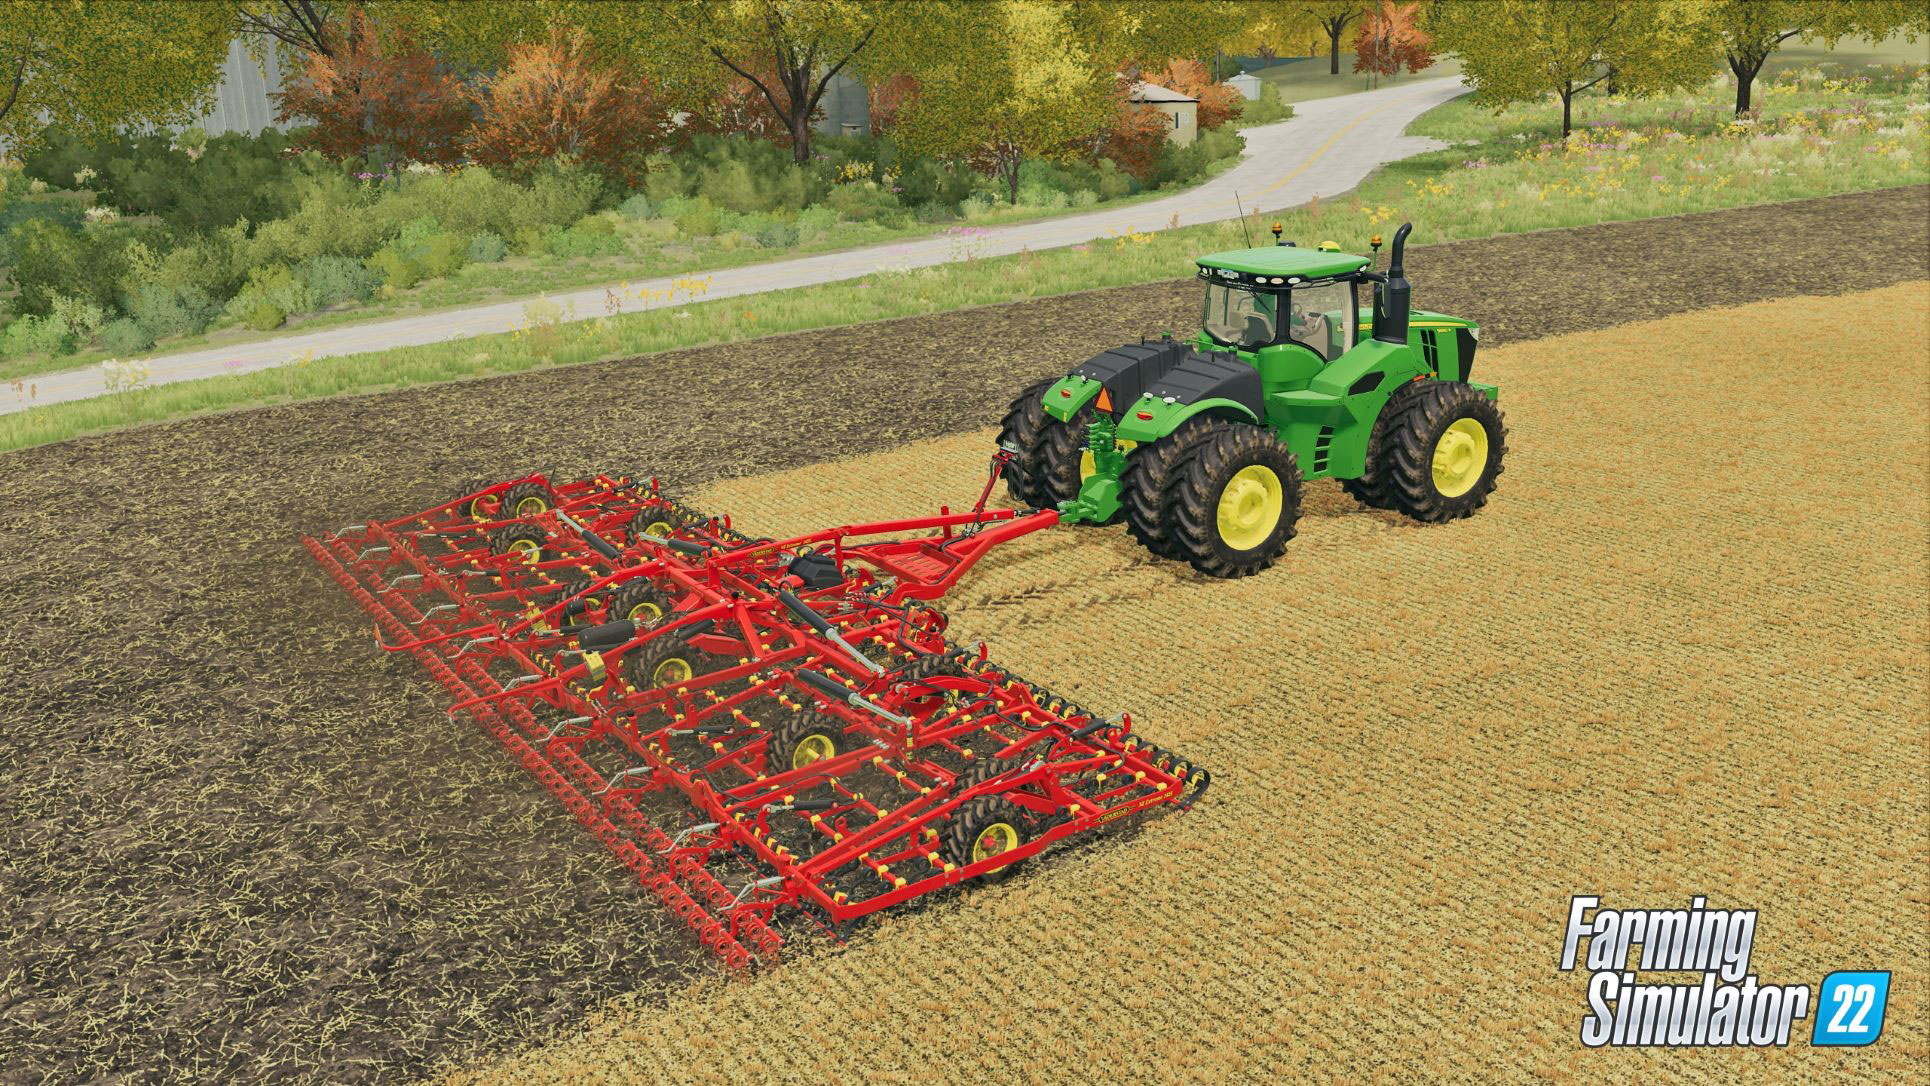 PS5 Farming Simulator 22 - Platinum Edition 